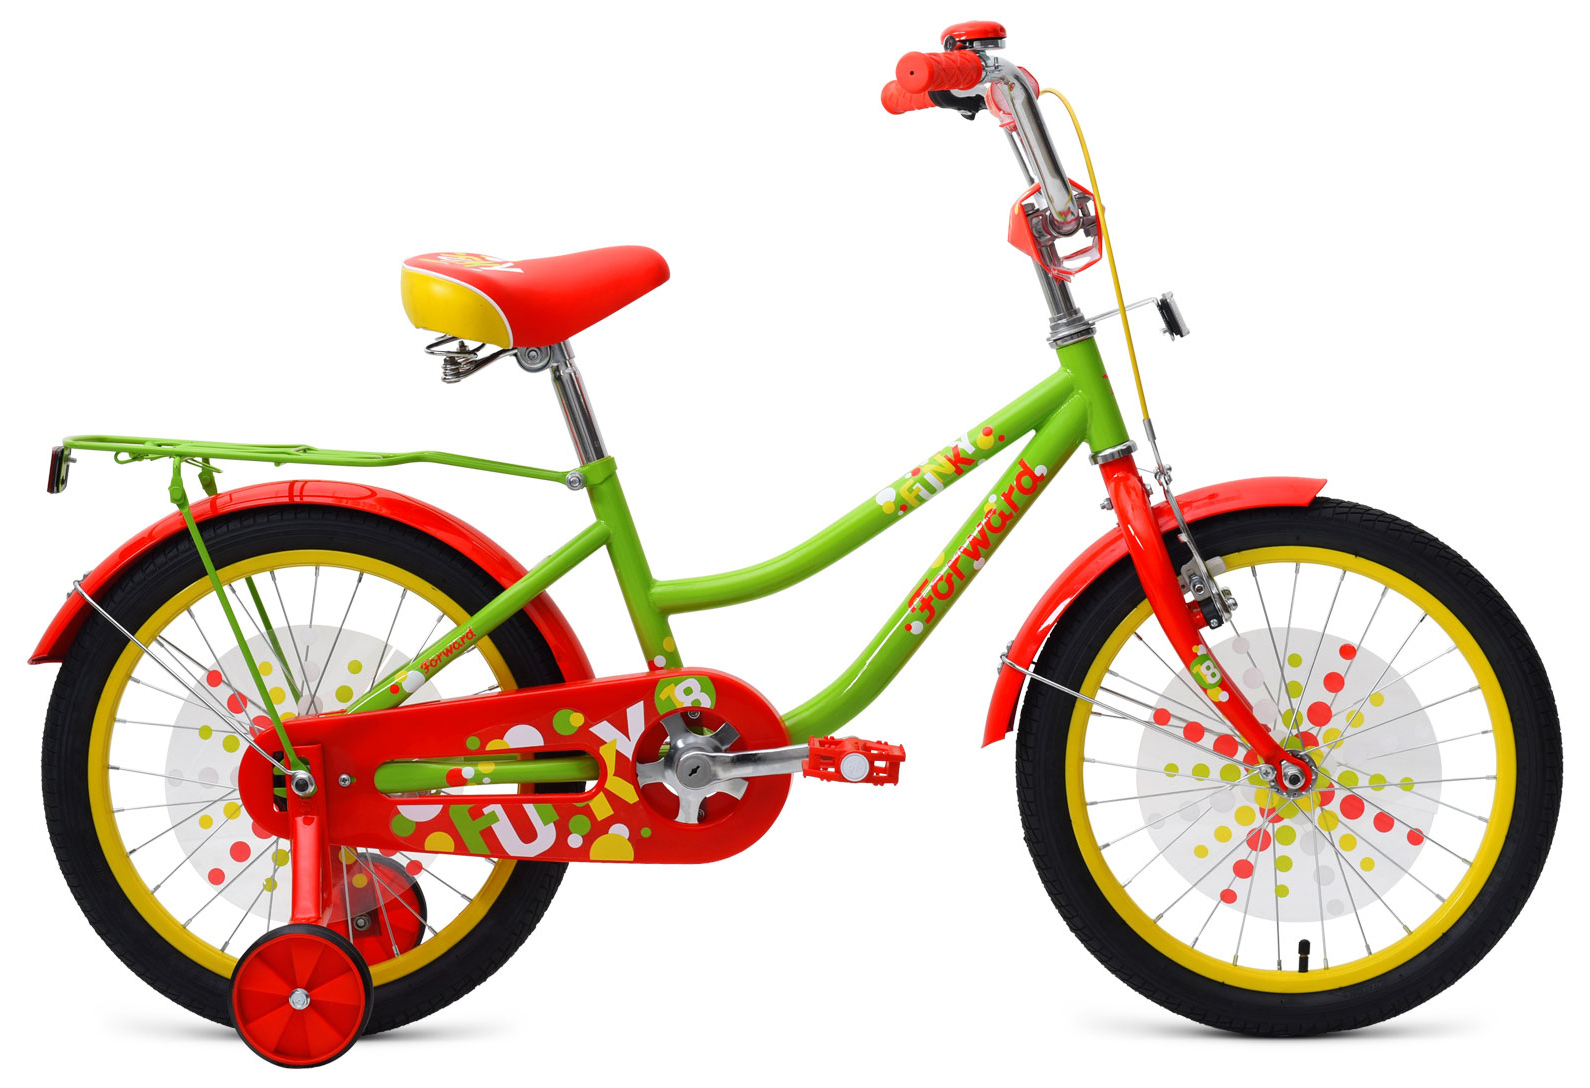  Отзывы о Трехколесный детский велосипед Forward Funky 18 2019